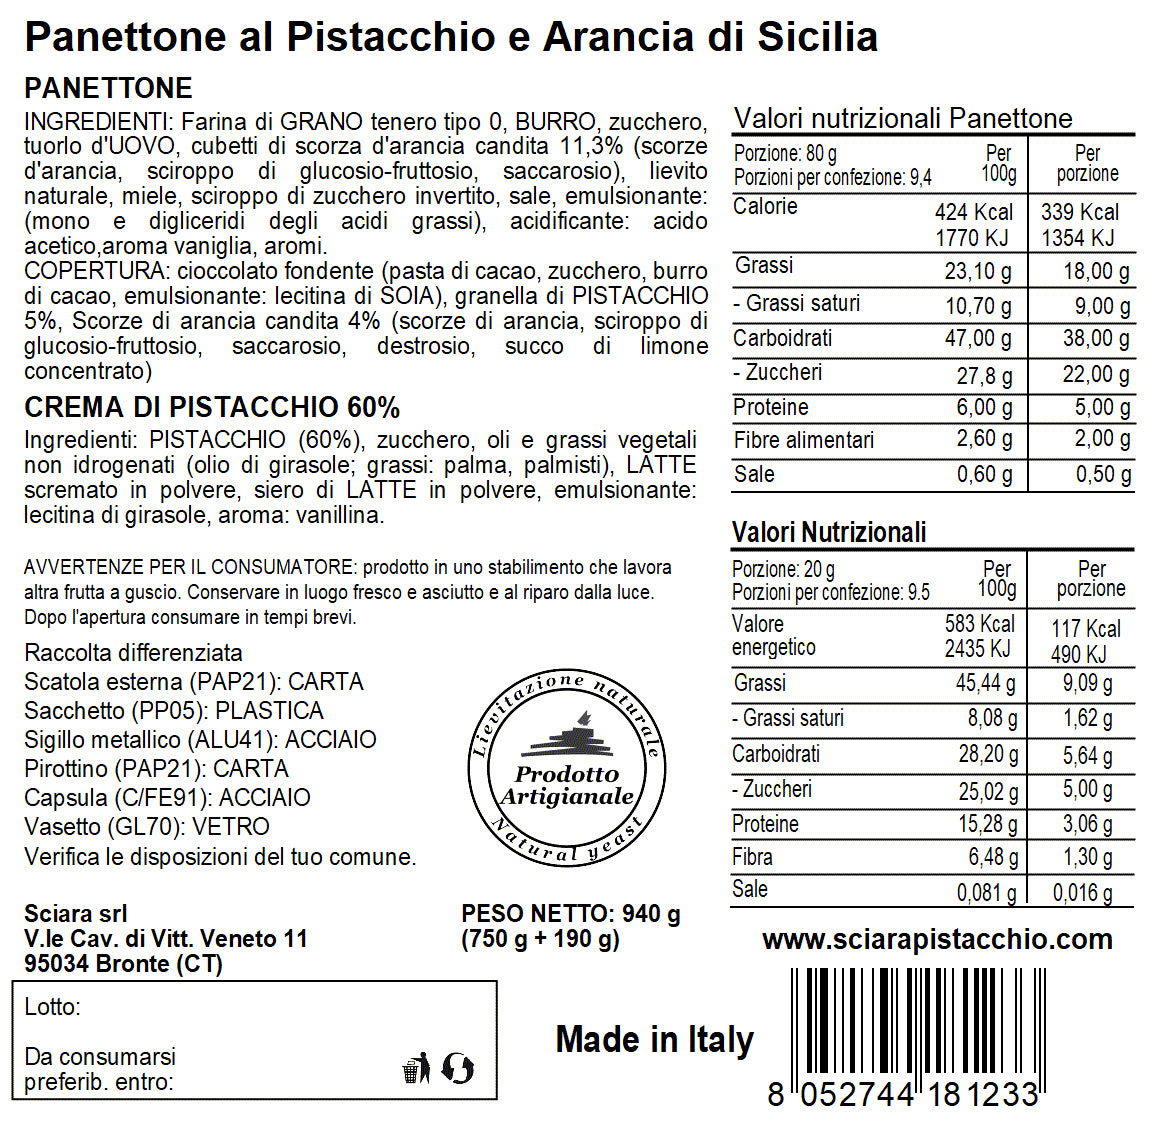 Panettone Pistacchio e Arancia di Sicilia con Crema di Pistacchio al 60% - Sciara La terra del pistacchio Bronte